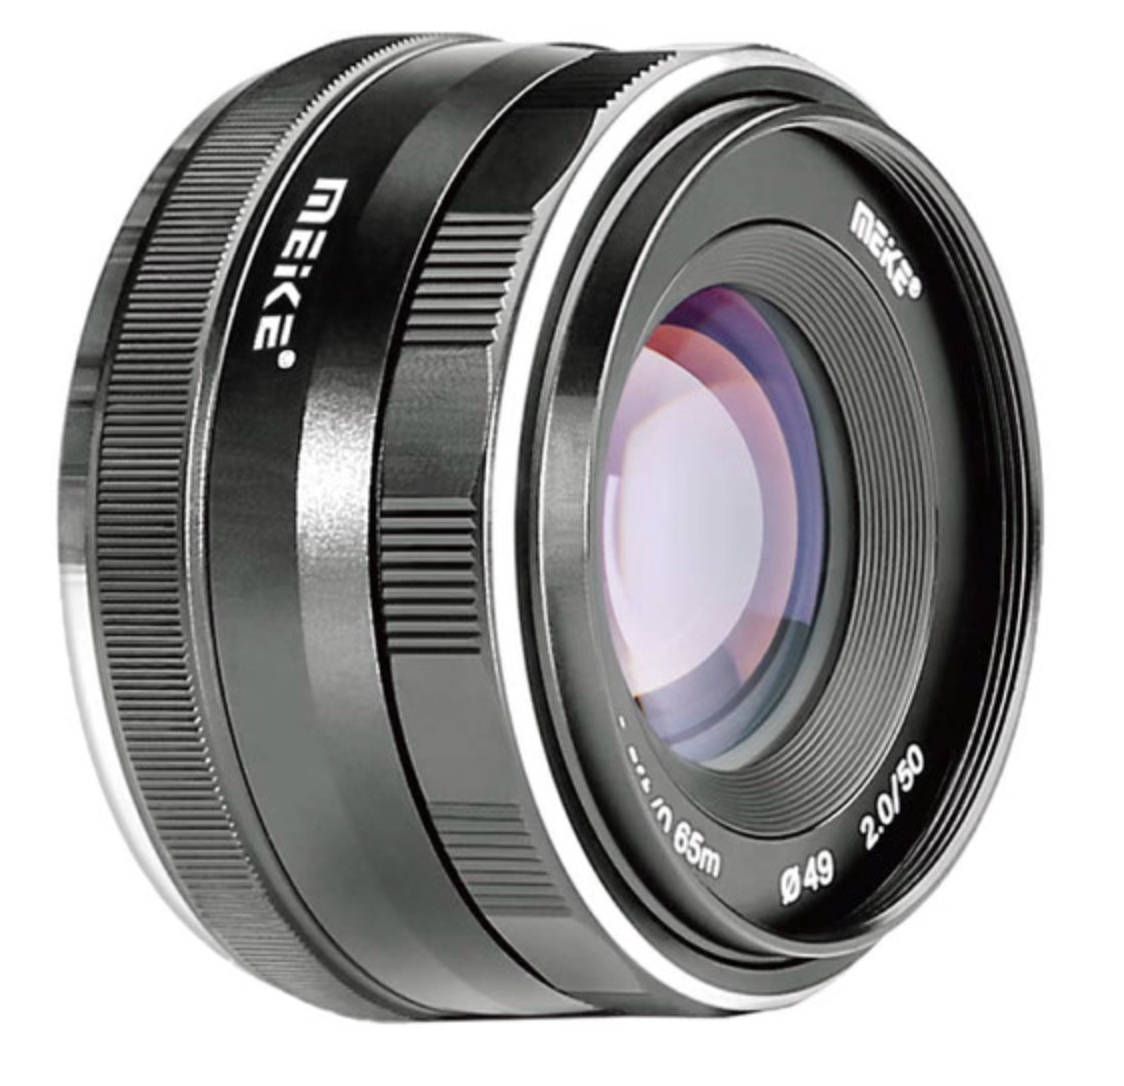 Meike MK-50mm f/2 Lens for Sony E